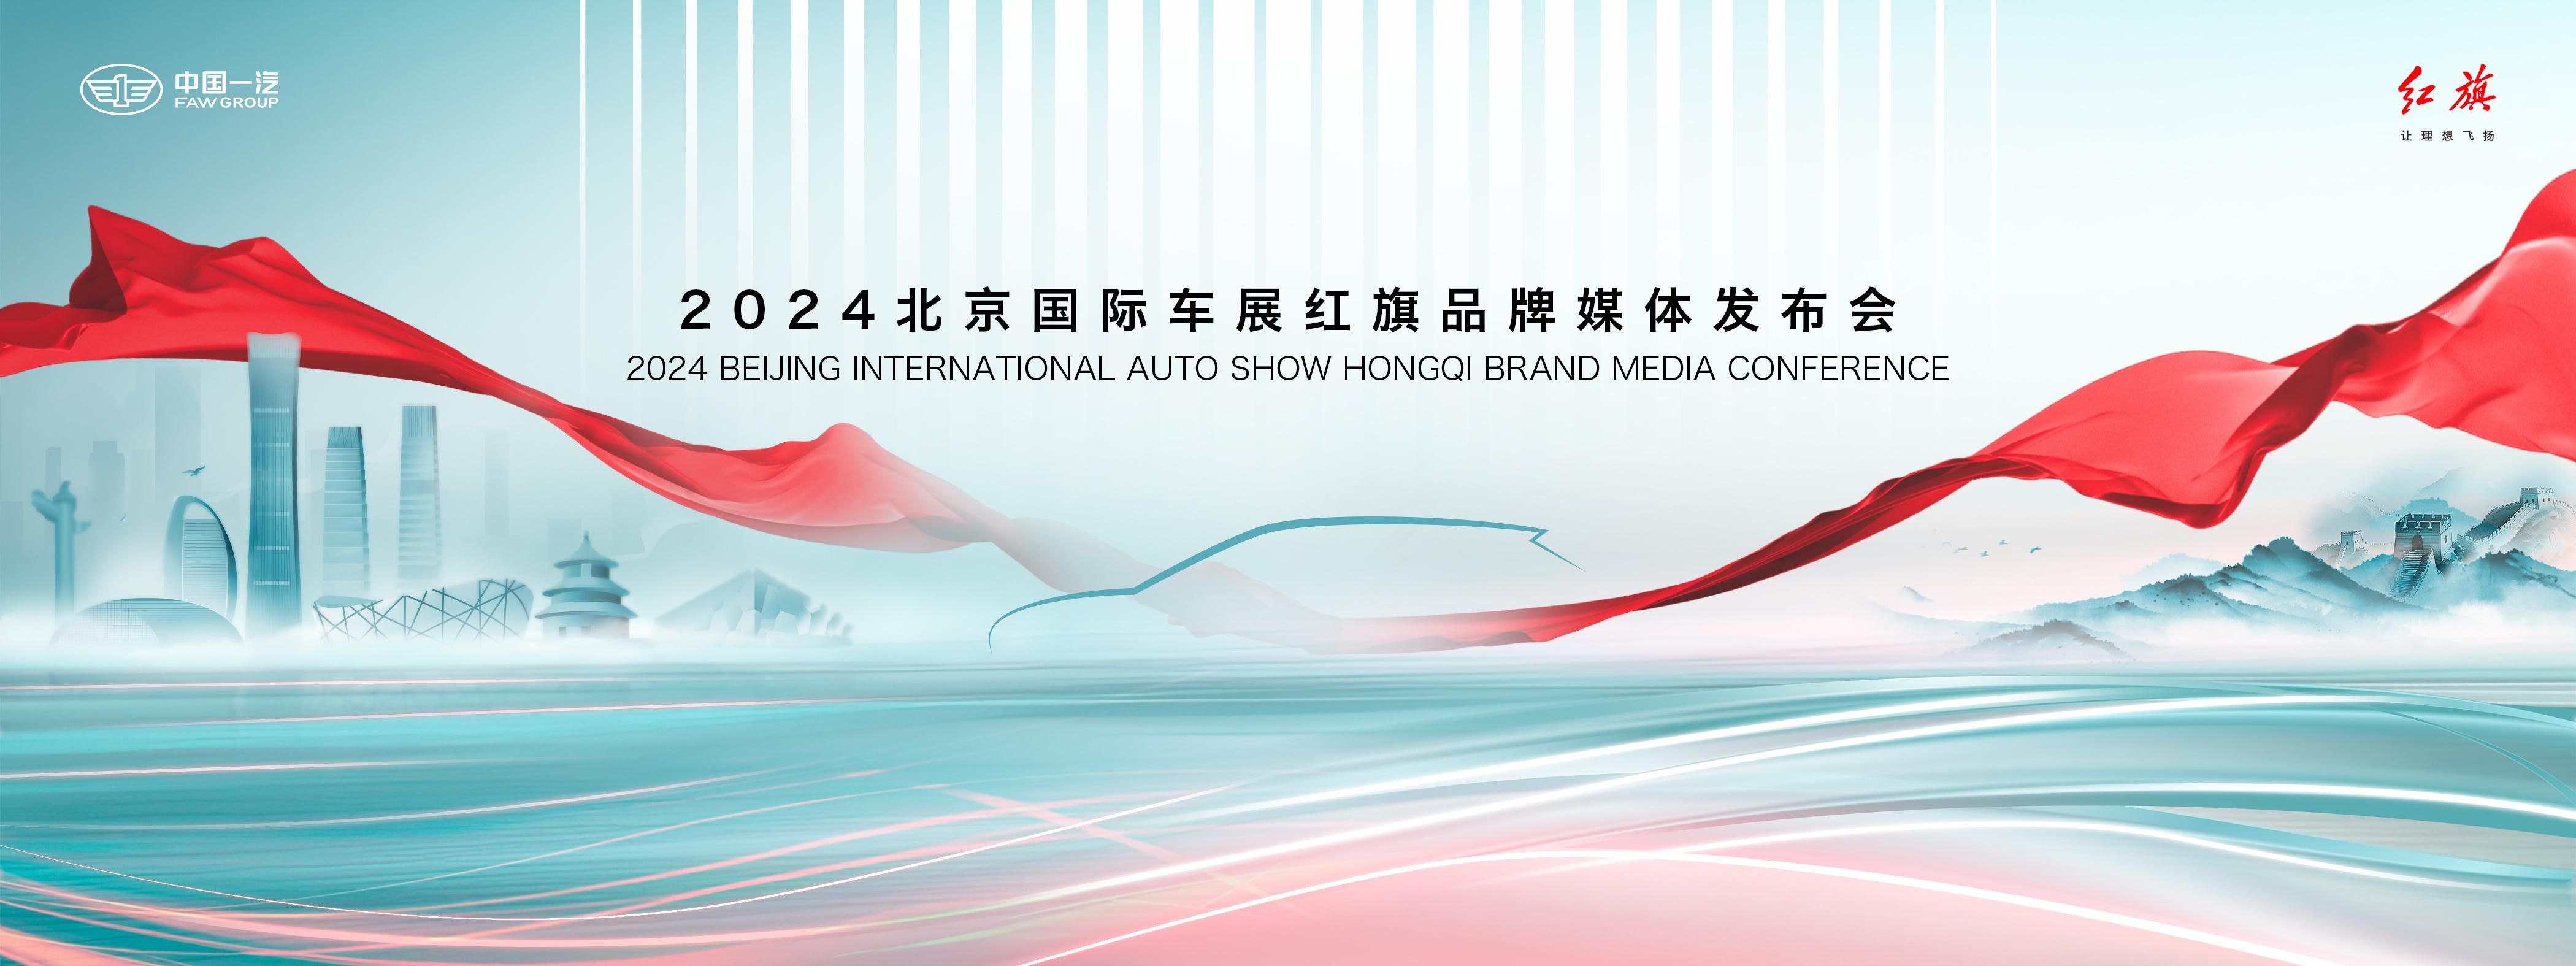 中式豪华新气象 红旗携三大子品牌新车亮相北京车展